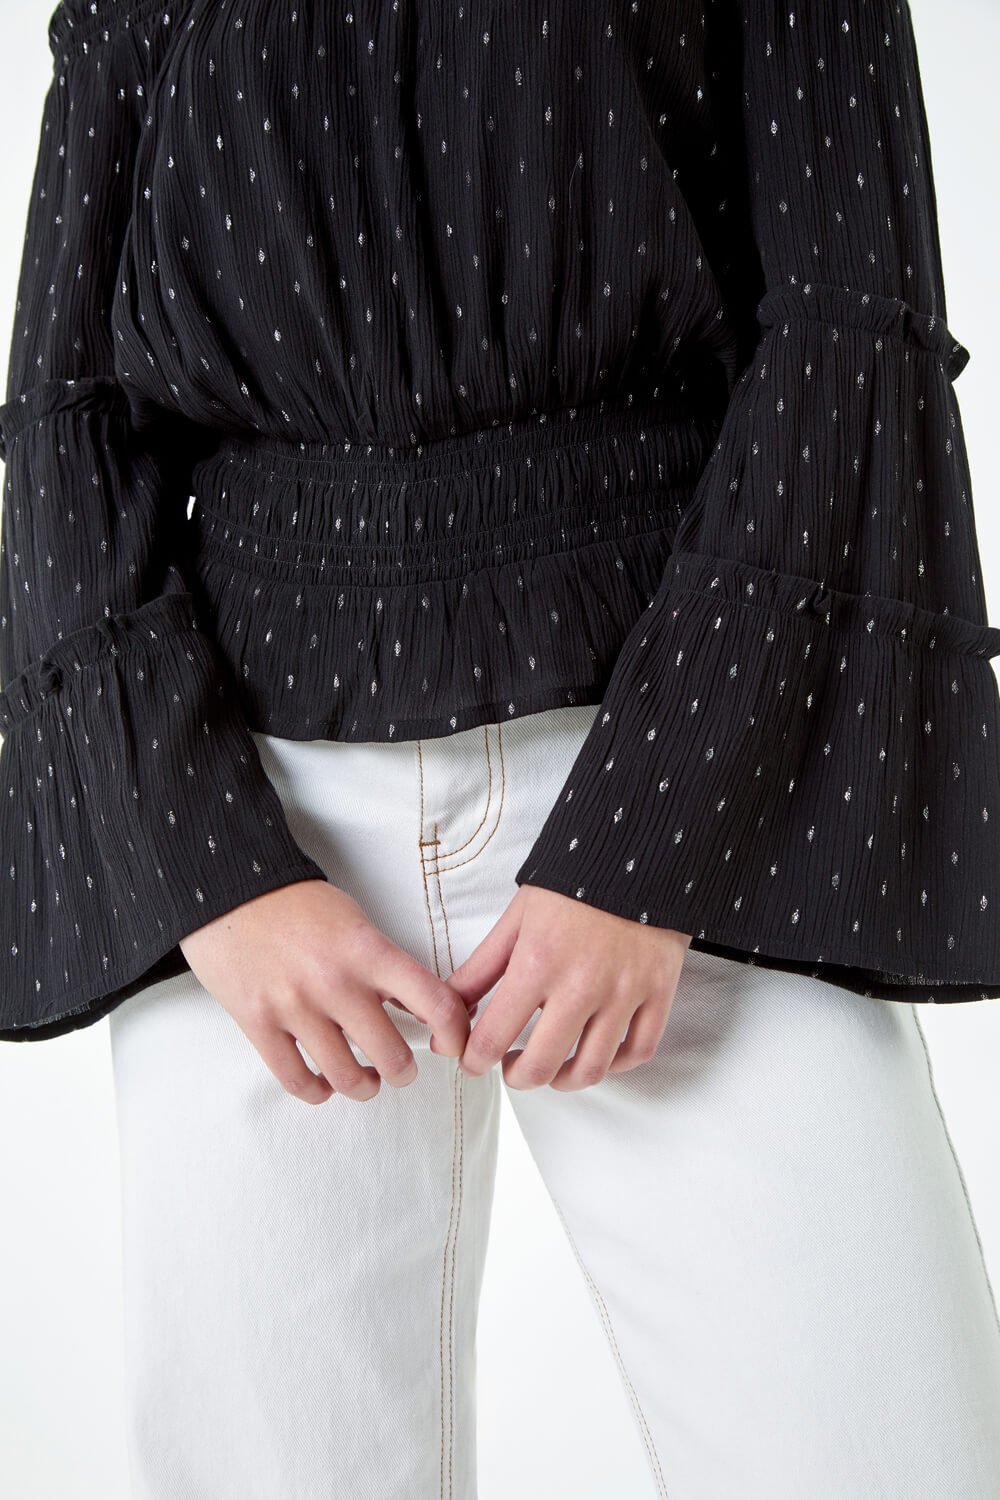 Black Shimmer Foil Textured Bardot Top, Image 5 of 5